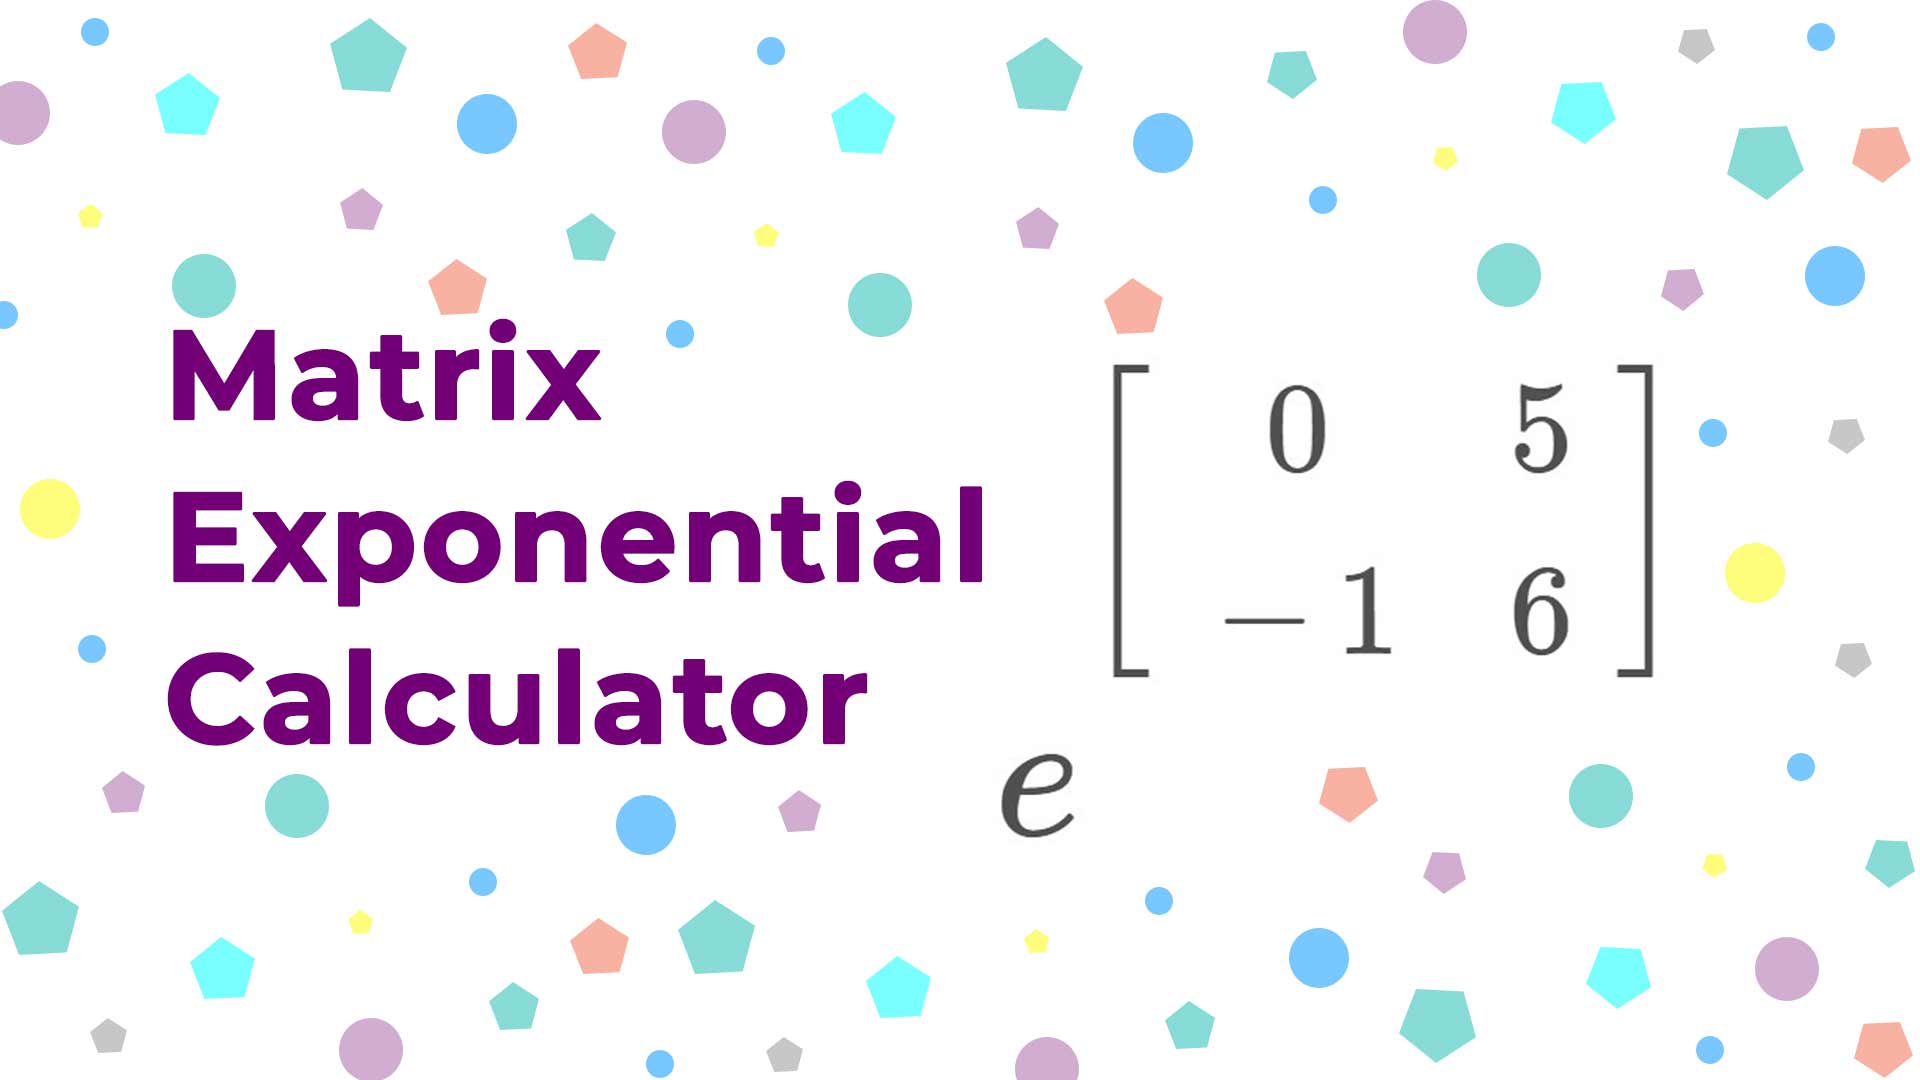 Matrix Exponential Calculator